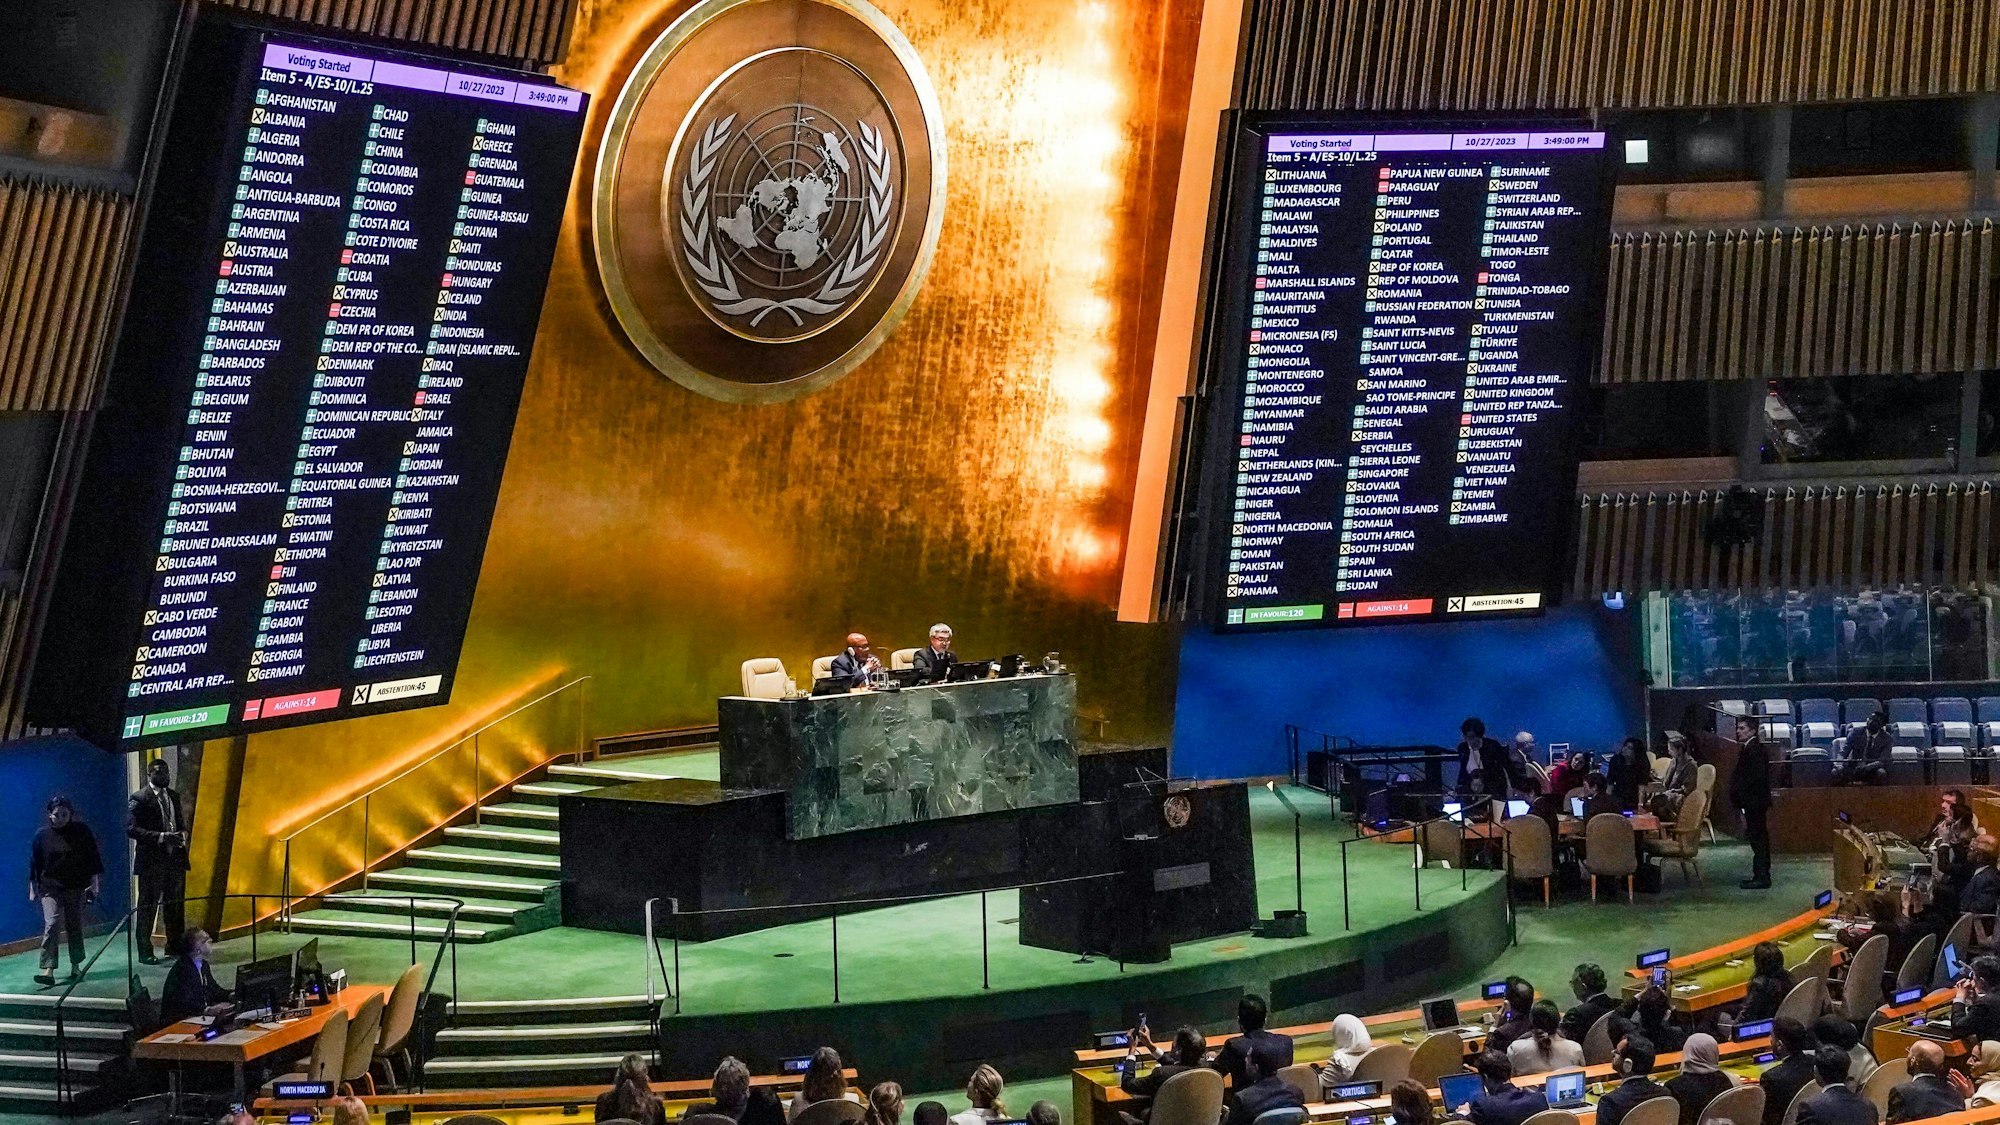 Die UN-Vollversammlung hatte am 27. Oktober eine Resolution zur Verbesserung der humanitären Situation und für eine sofortige Waffenruhe im Gazastreifen verabschiedet.